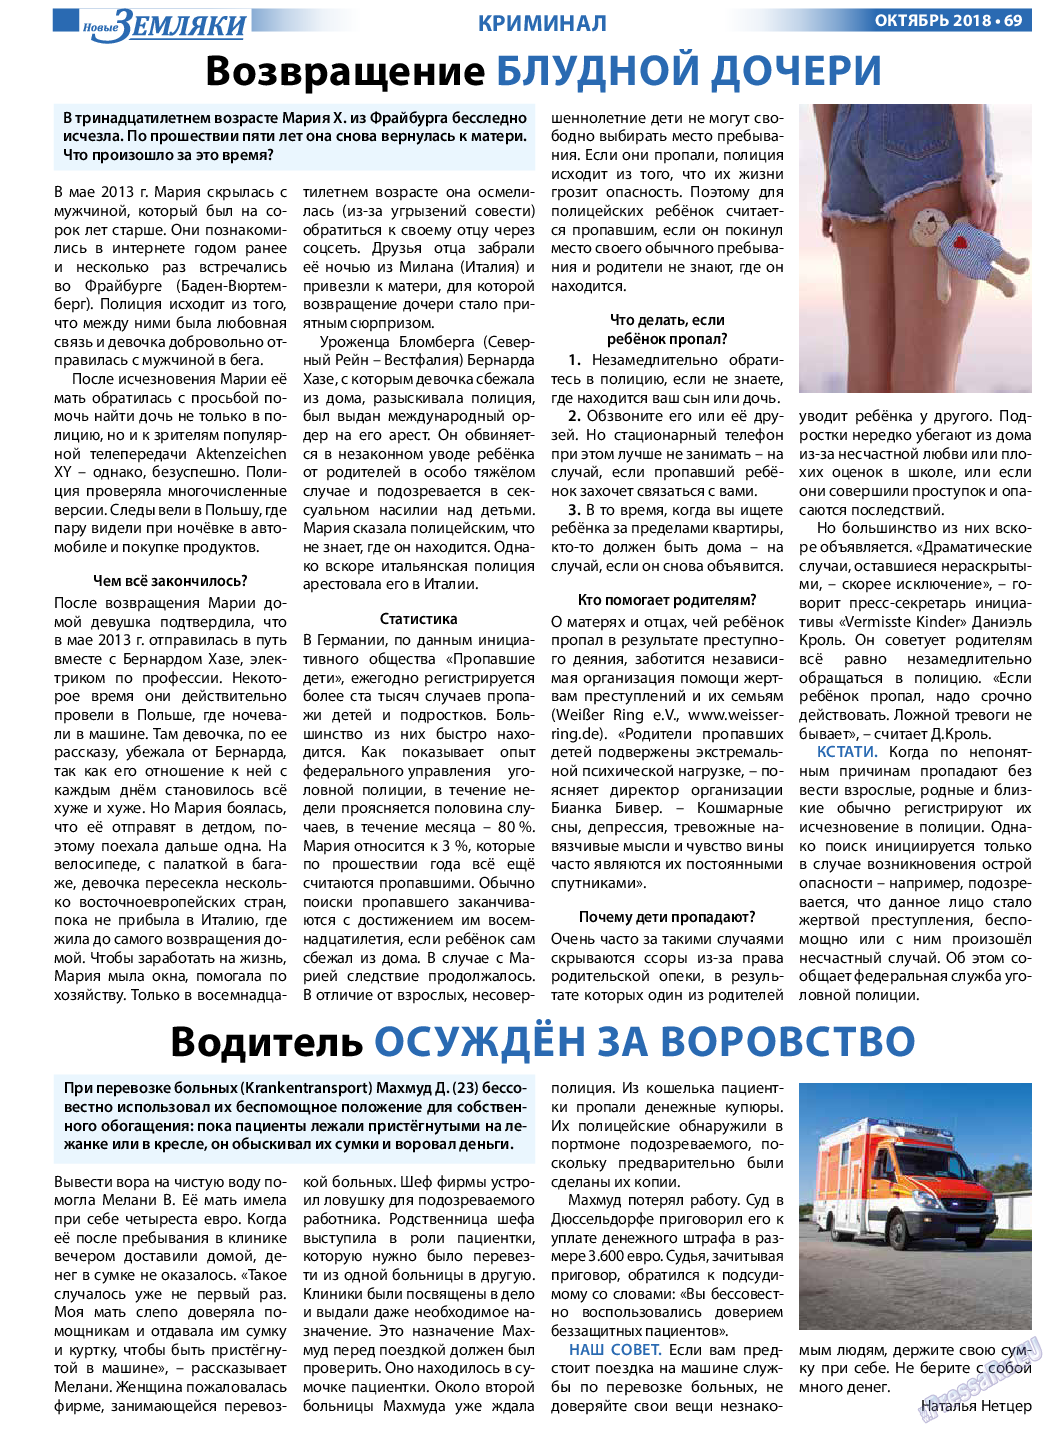 Новые Земляки, газета. 2018 №10 стр.69